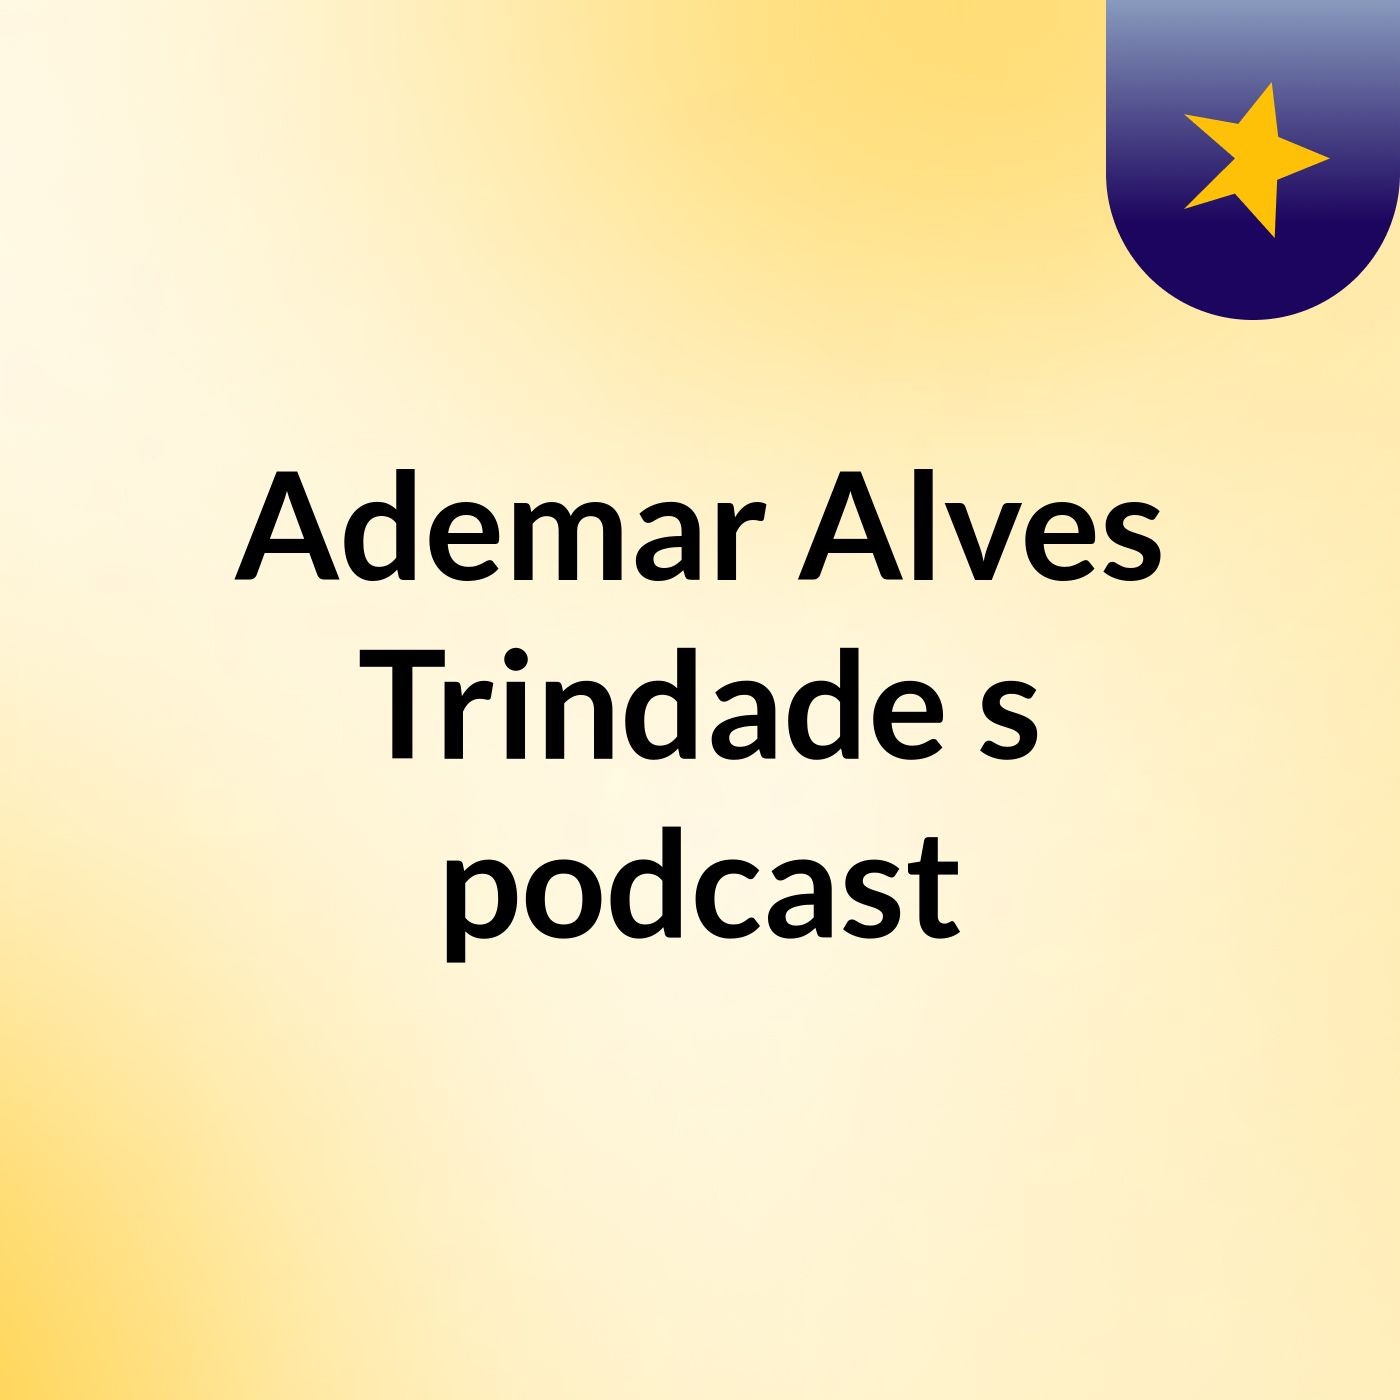 Ademar Alves Trindade's podcast